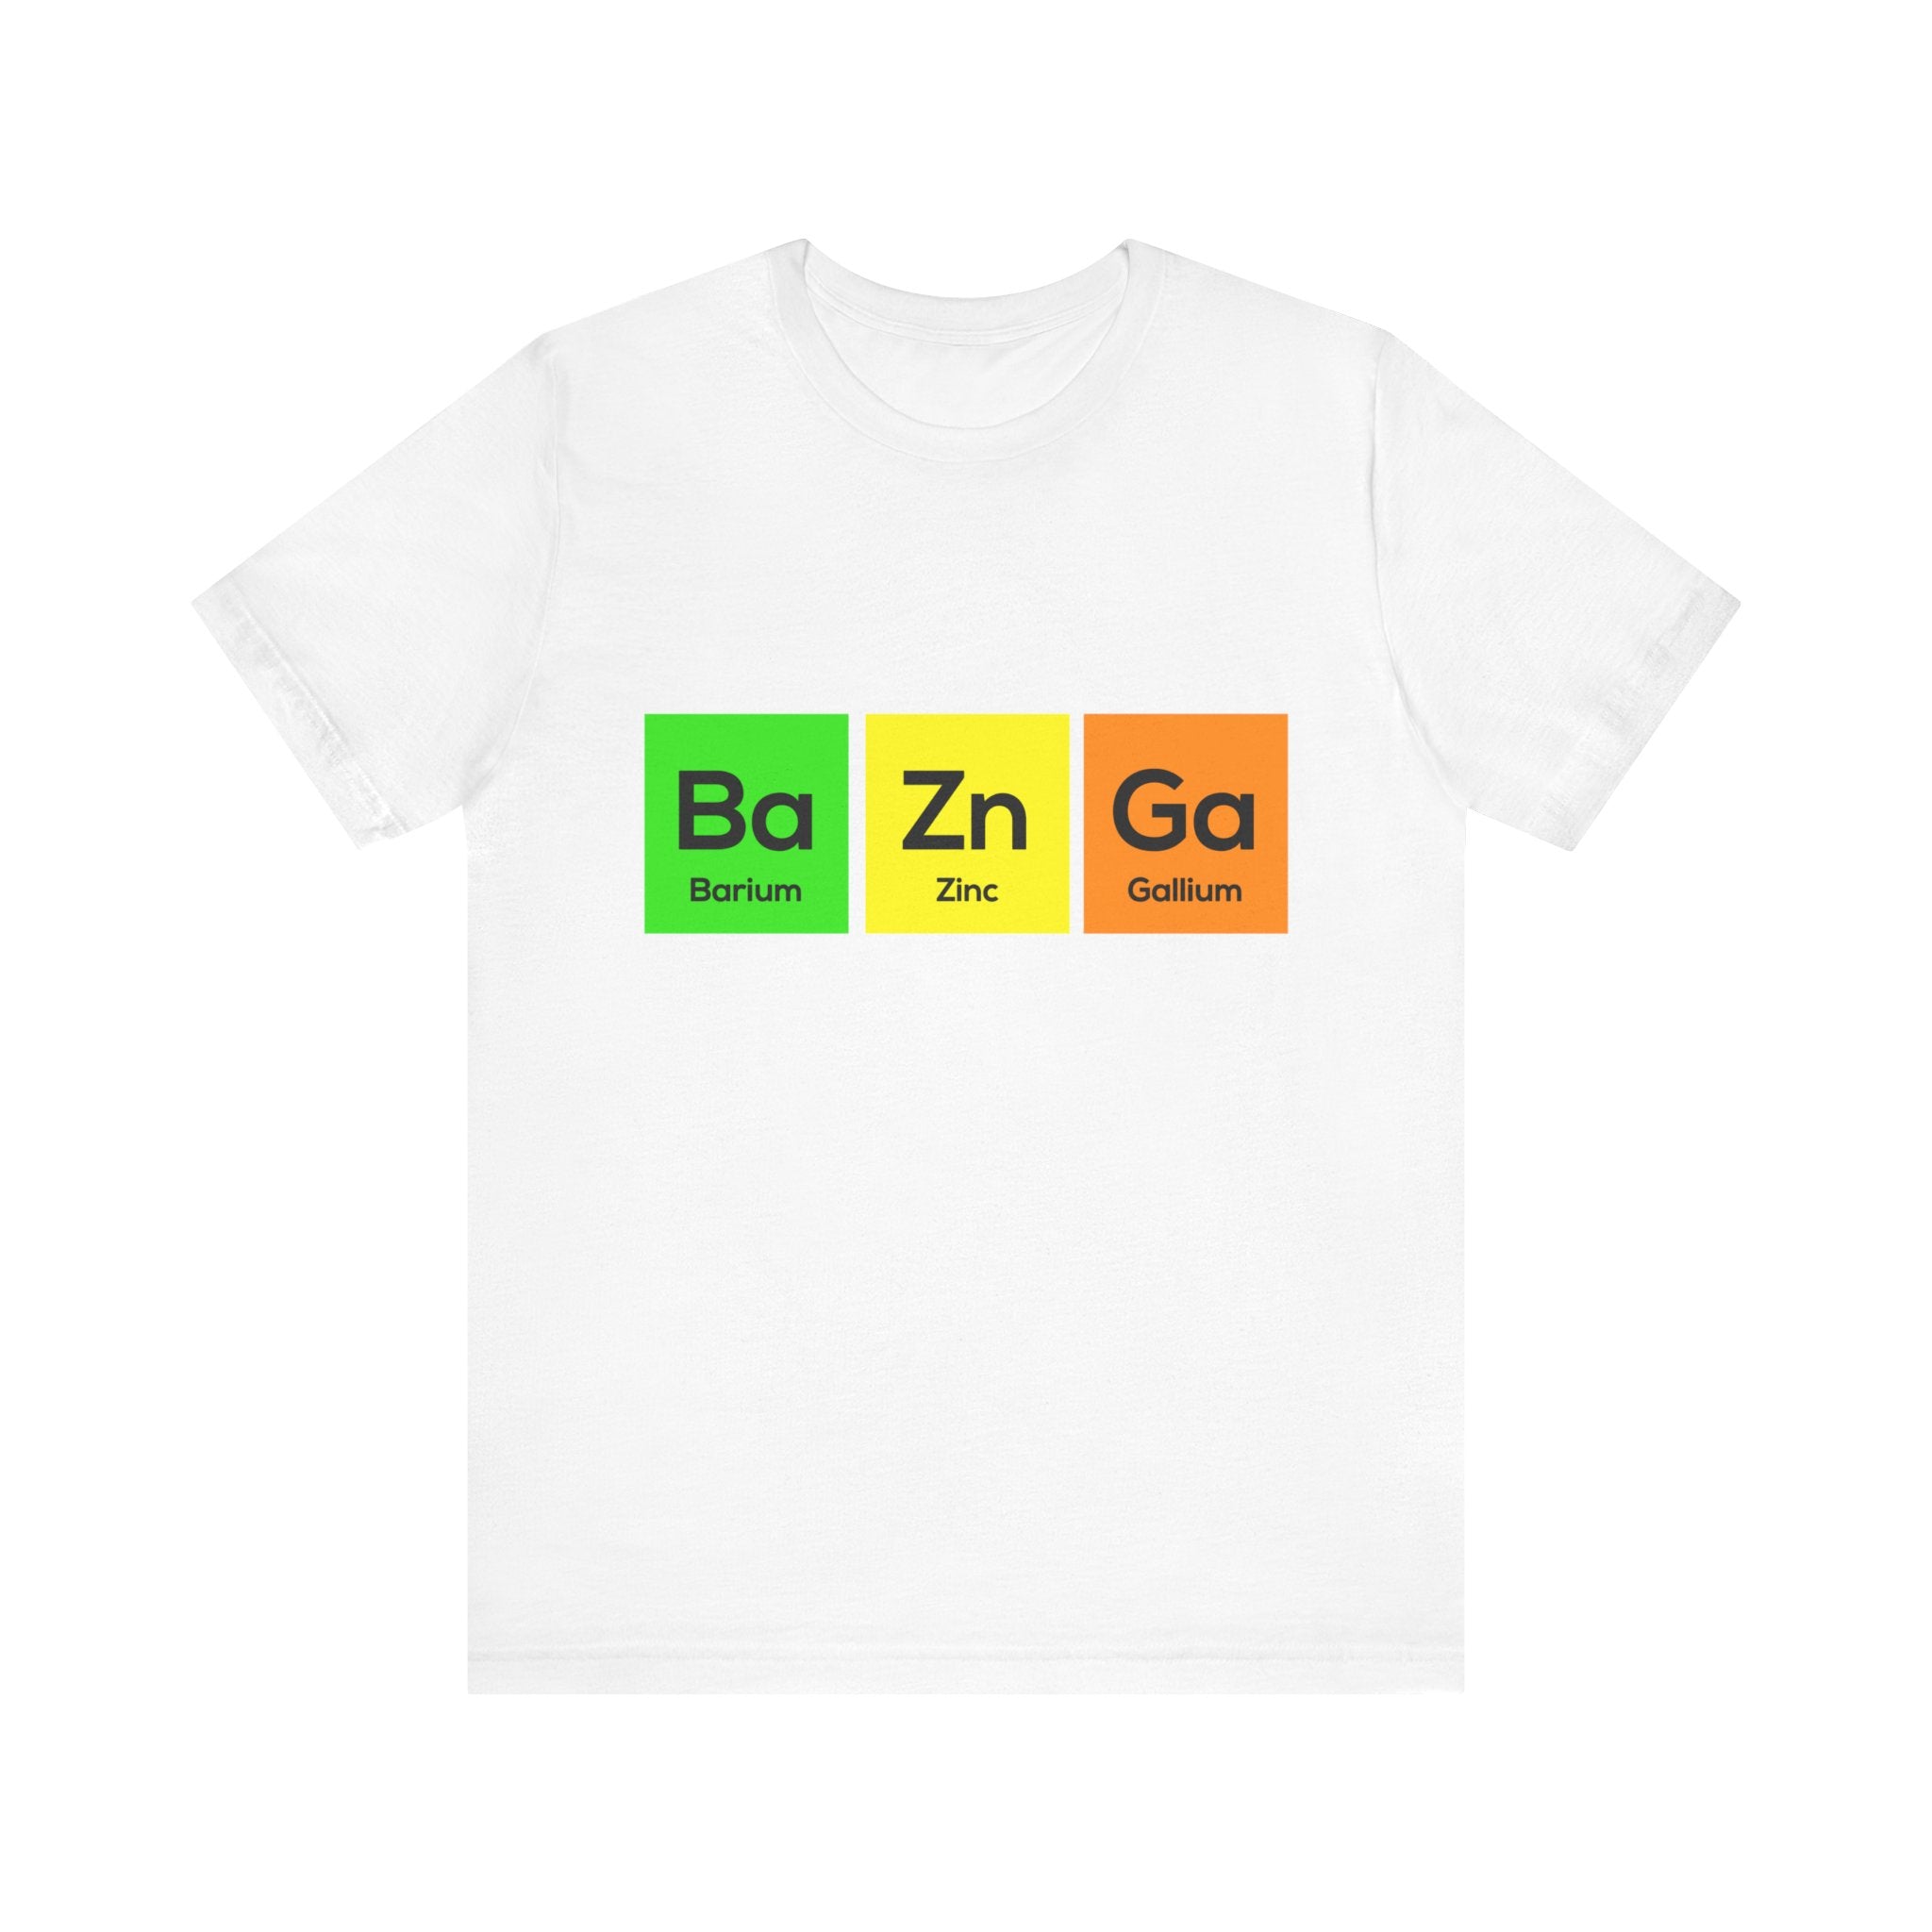 Ba-Zn-Ga - T-Shirt